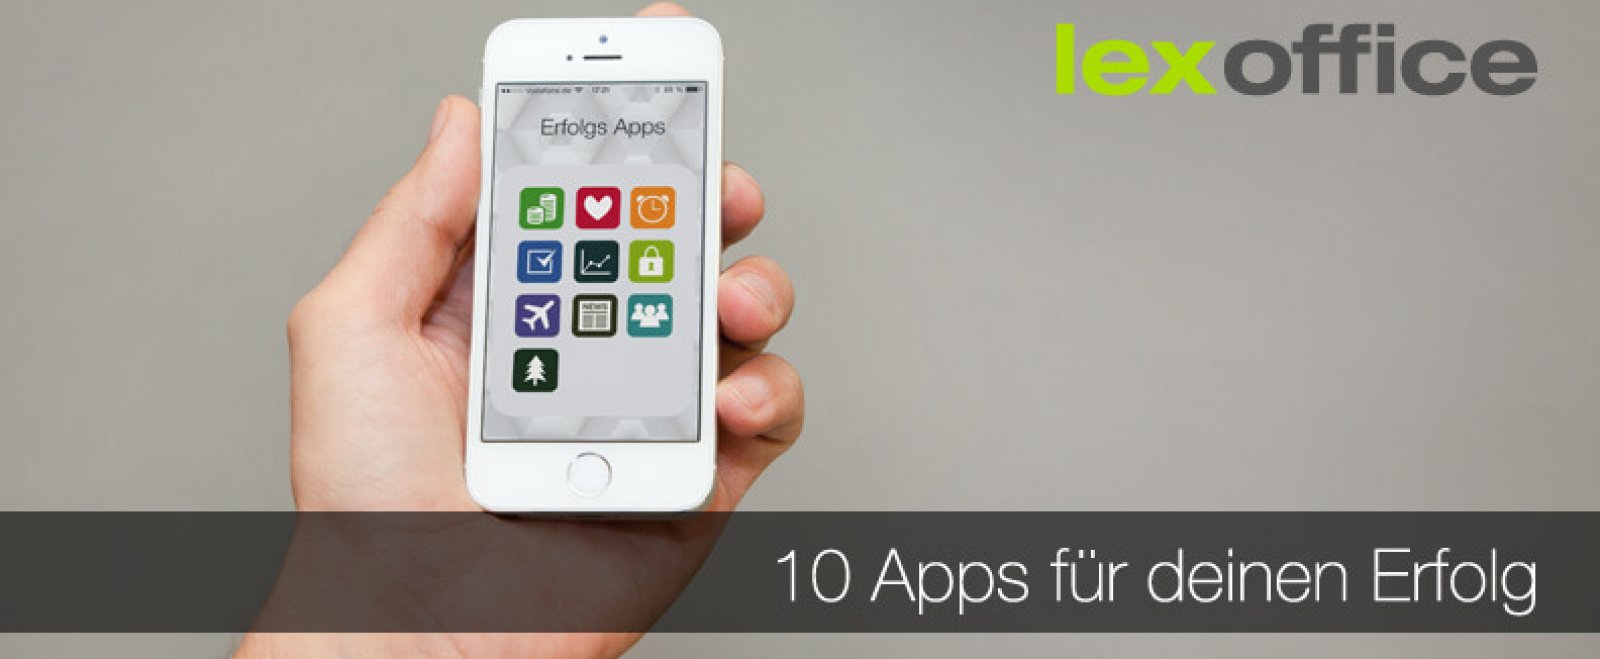 Produktivitätshelfer: 10 Apps für deinen Erfolg